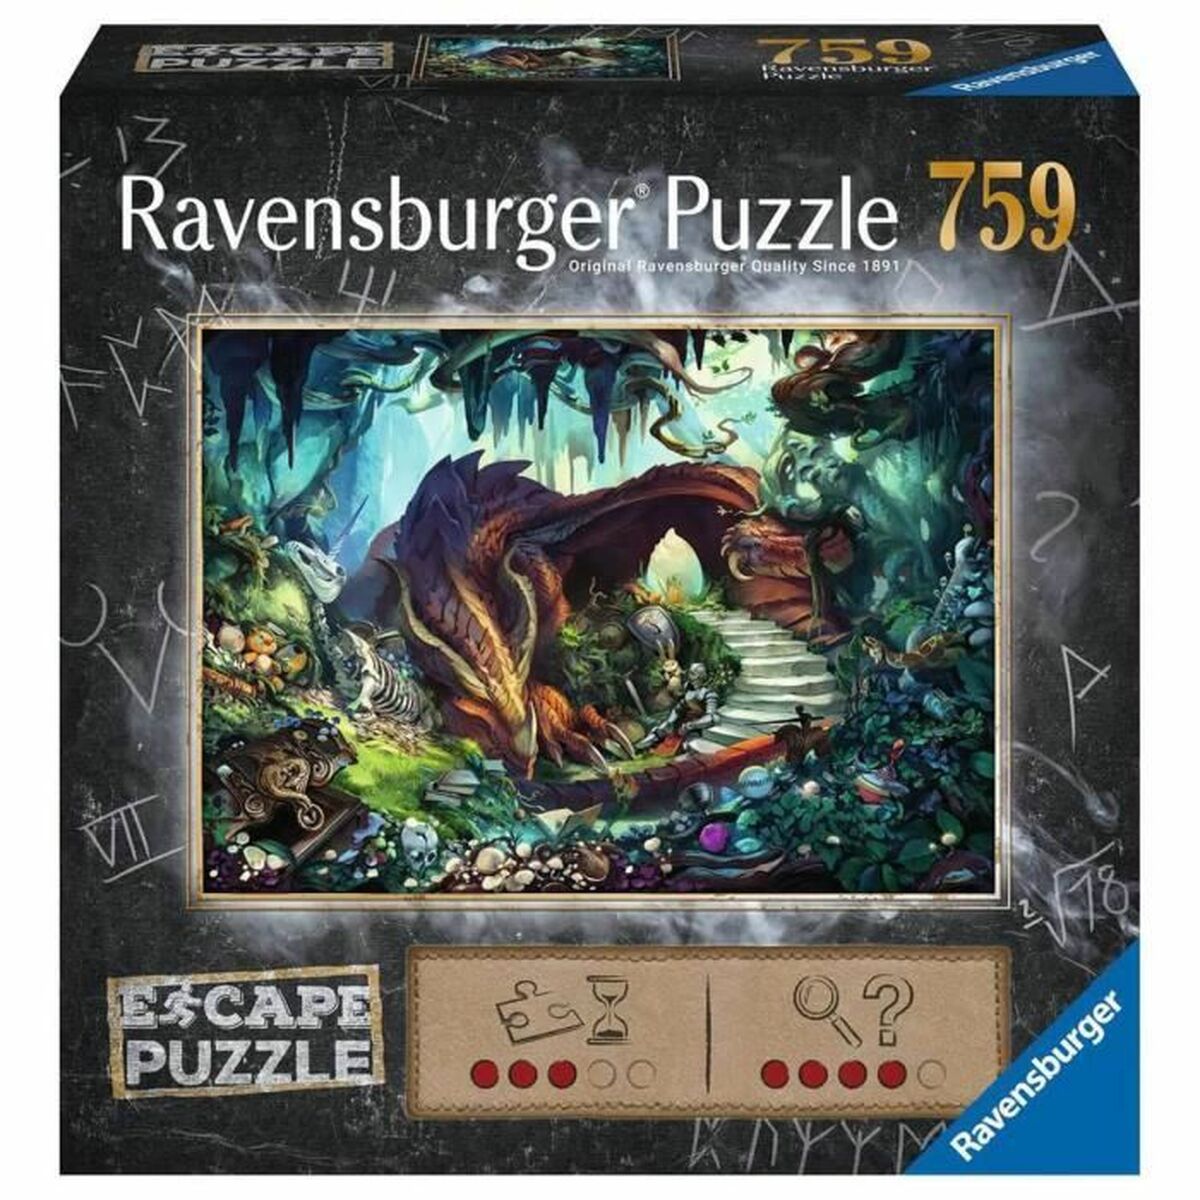 Puzzle Ravensburger escape 759 - Ravensburger - Jardin D'Eyden - jardindeyden.fr